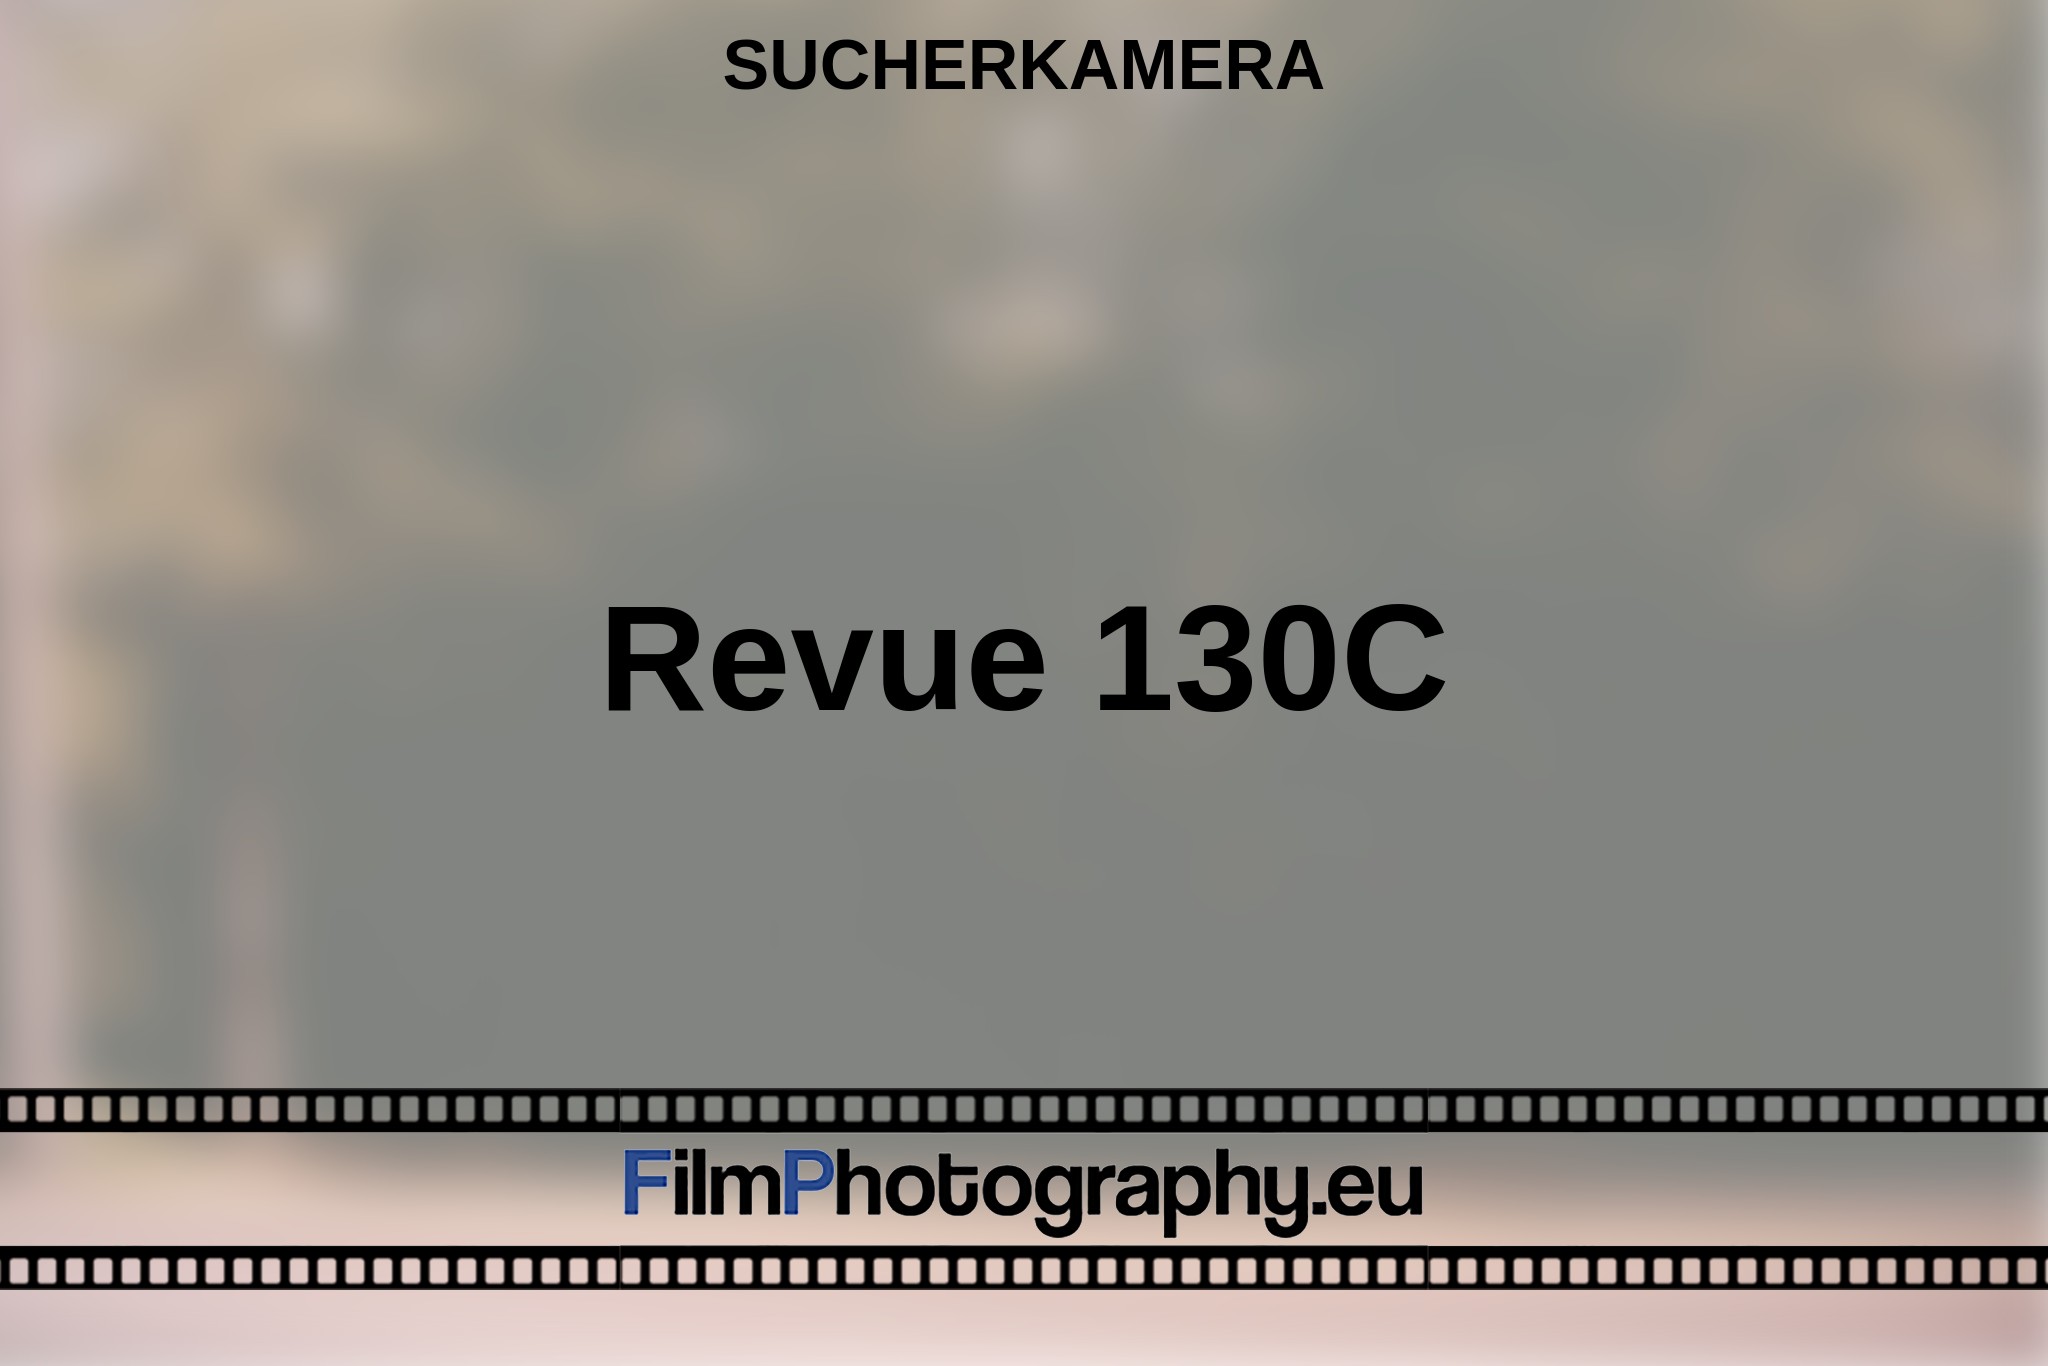 revue-130c-sucherkamera-bnv.jpg